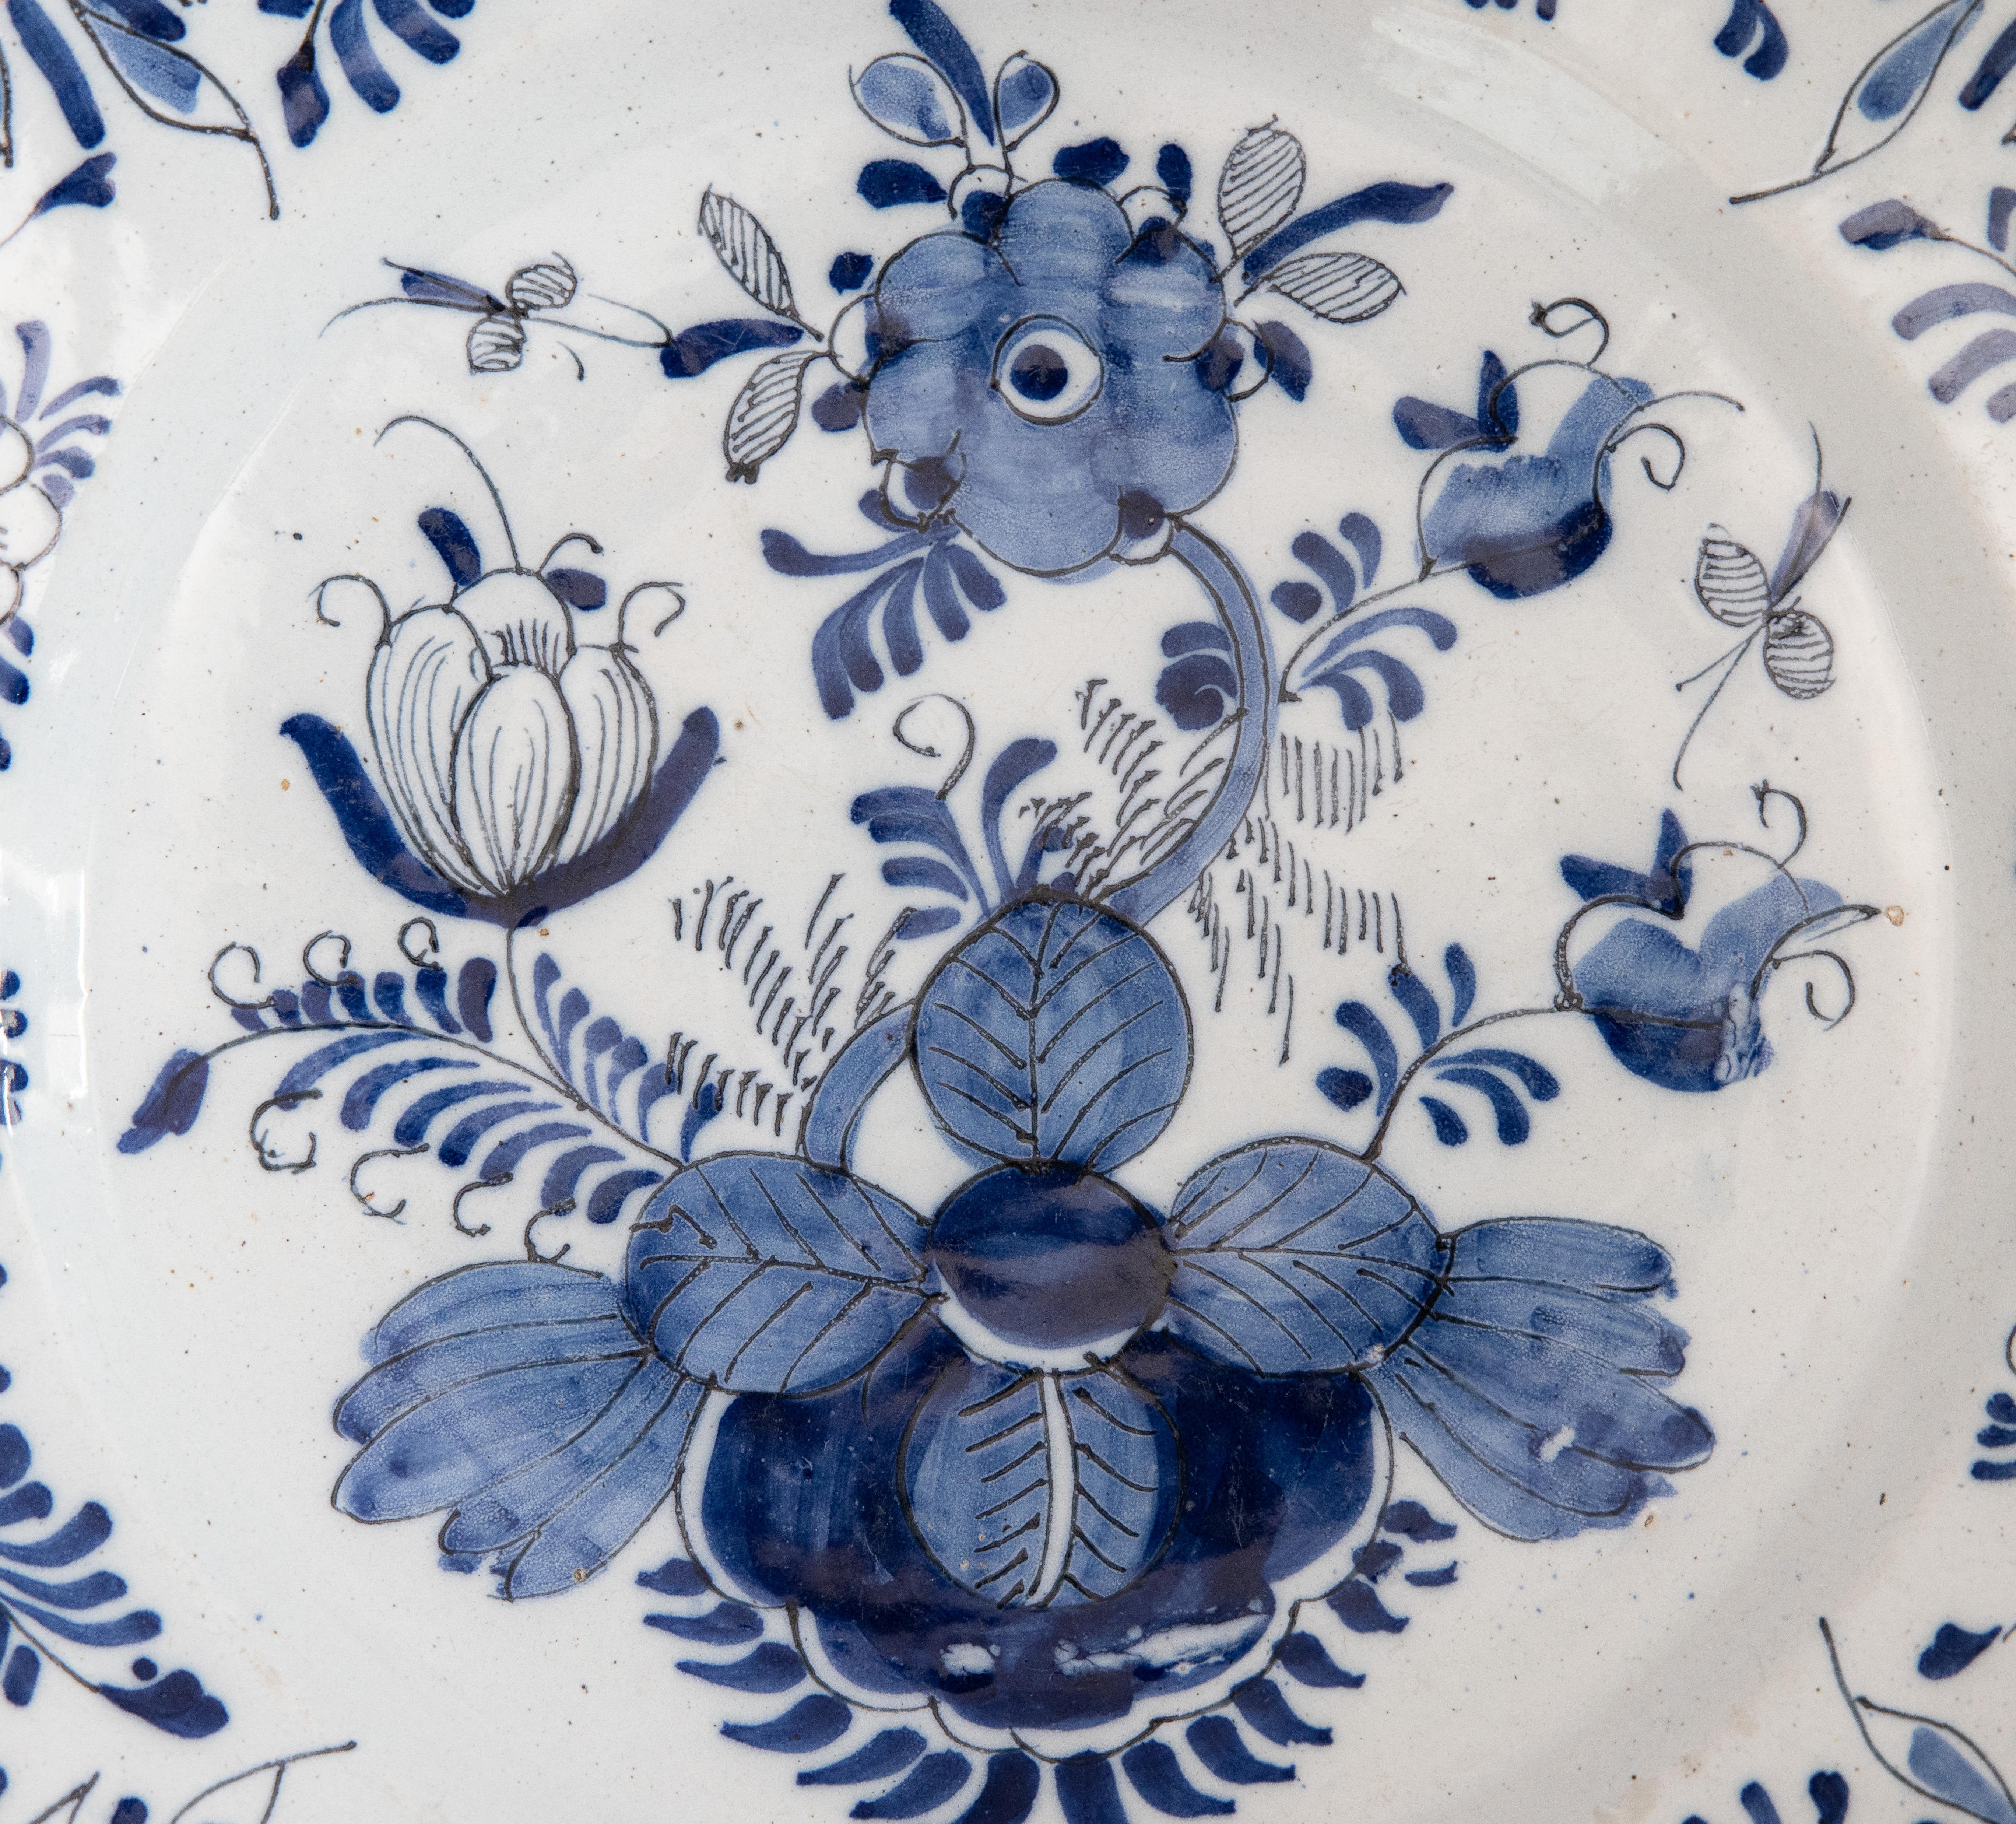 Großes holländisches Delft-Geschirr aus dem 18. Jahrhundert, handbemalt mit einem Blumen- und Blattmuster mit Insekten in Kobaltblau und Weiß, um 1750. Dieser schöne große Teller ist eine wunderbare Ergänzung zu einer Sammlung, die an der Wand, im